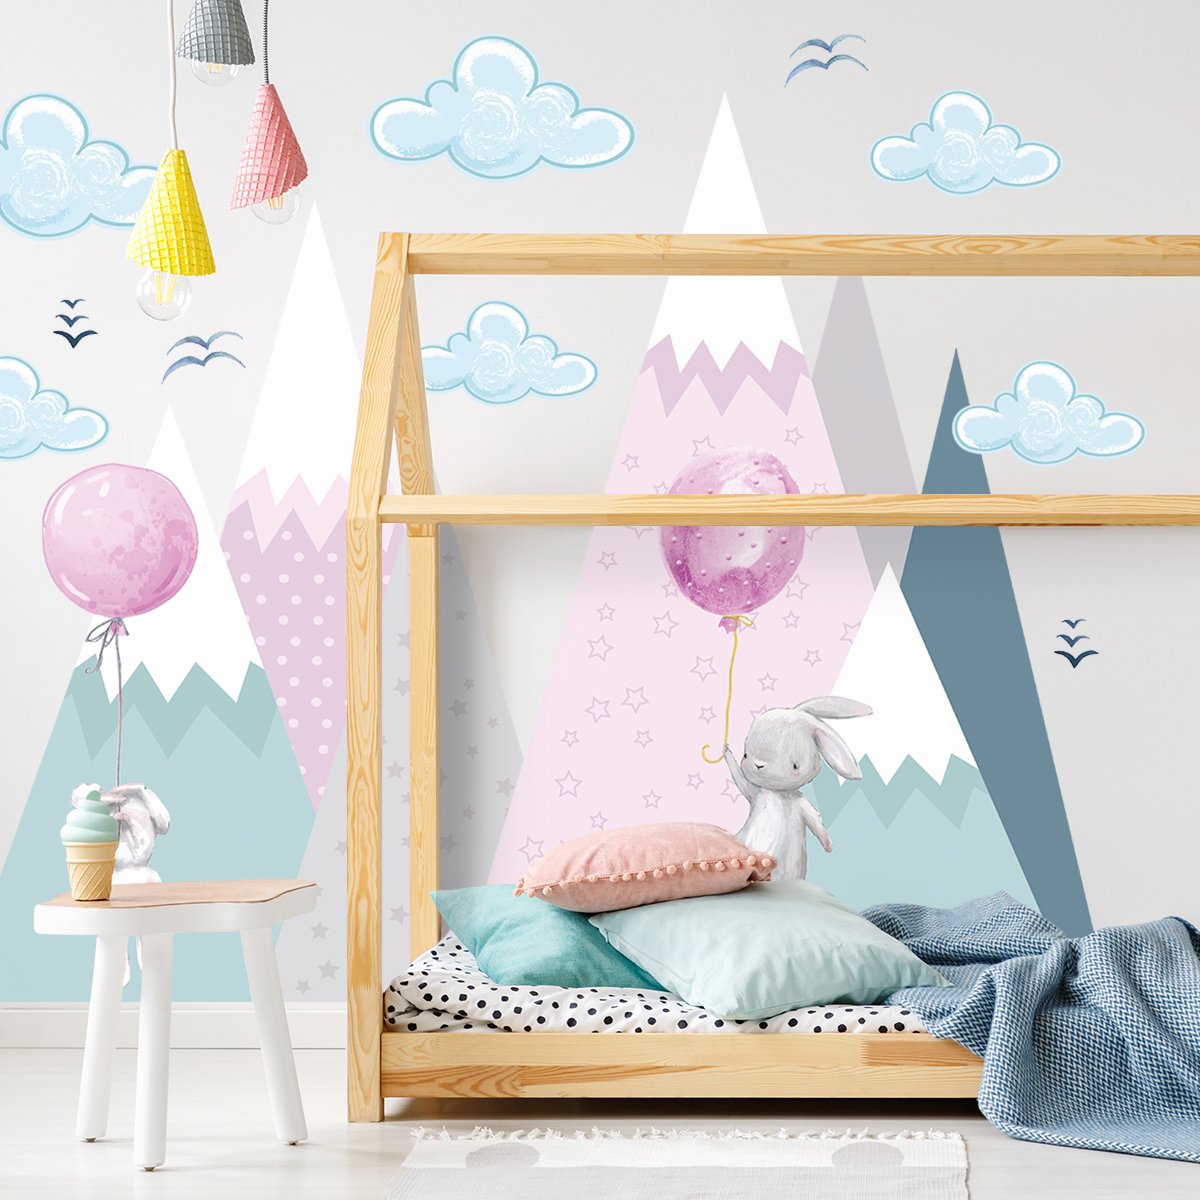 Duże naklejki na ścianę dla dzieci - króliki i góry - duży zestaw#kolor_rozowy